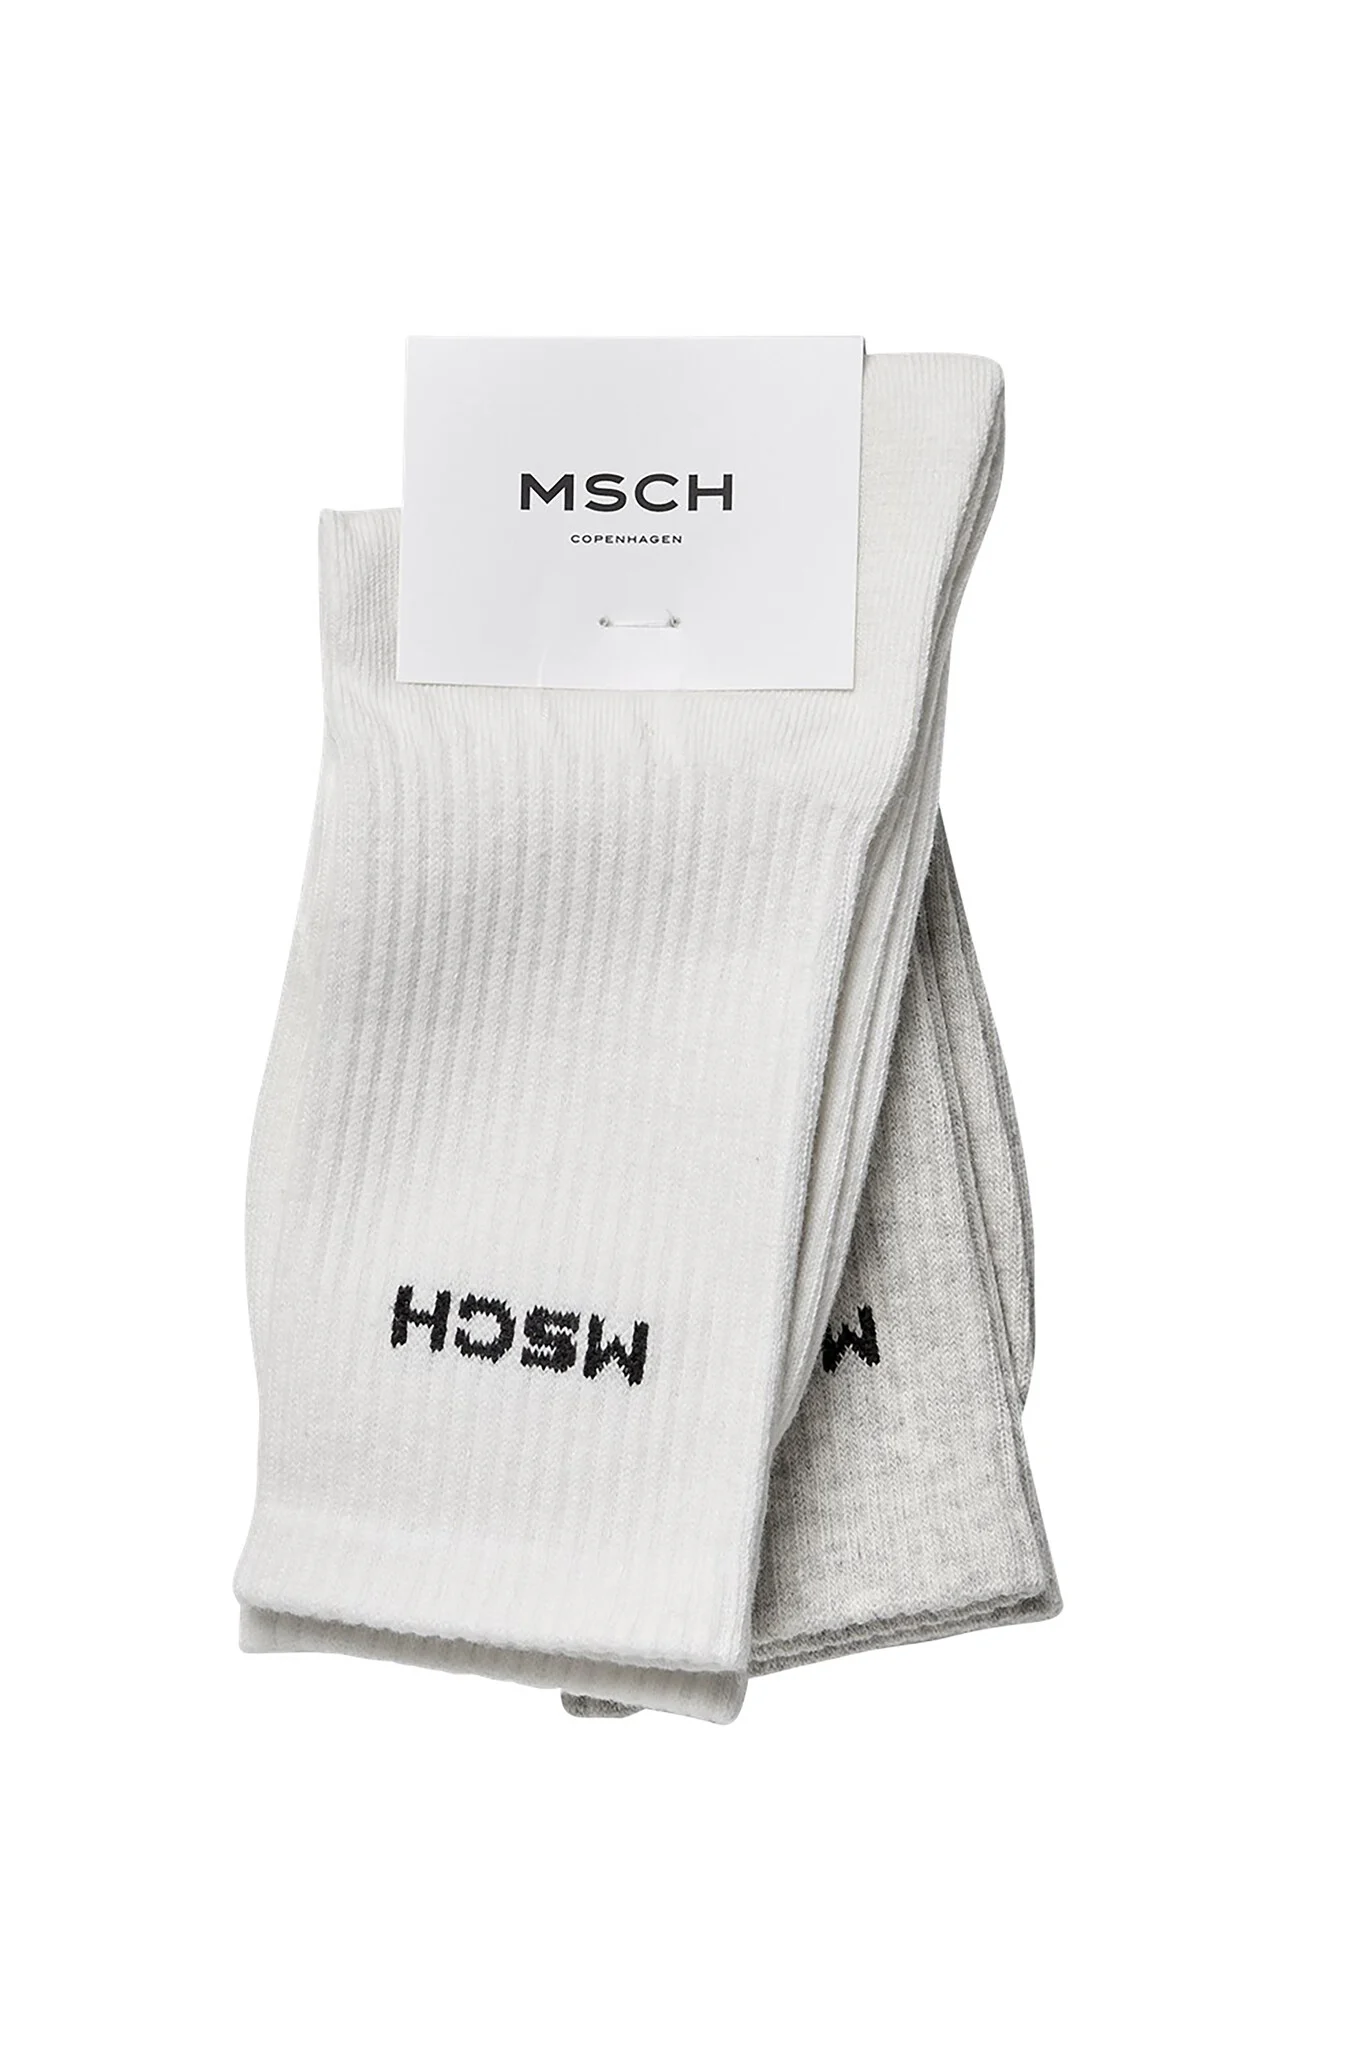 Afbeelding van Moss Copenhagen 18031 mschsporty logo socks